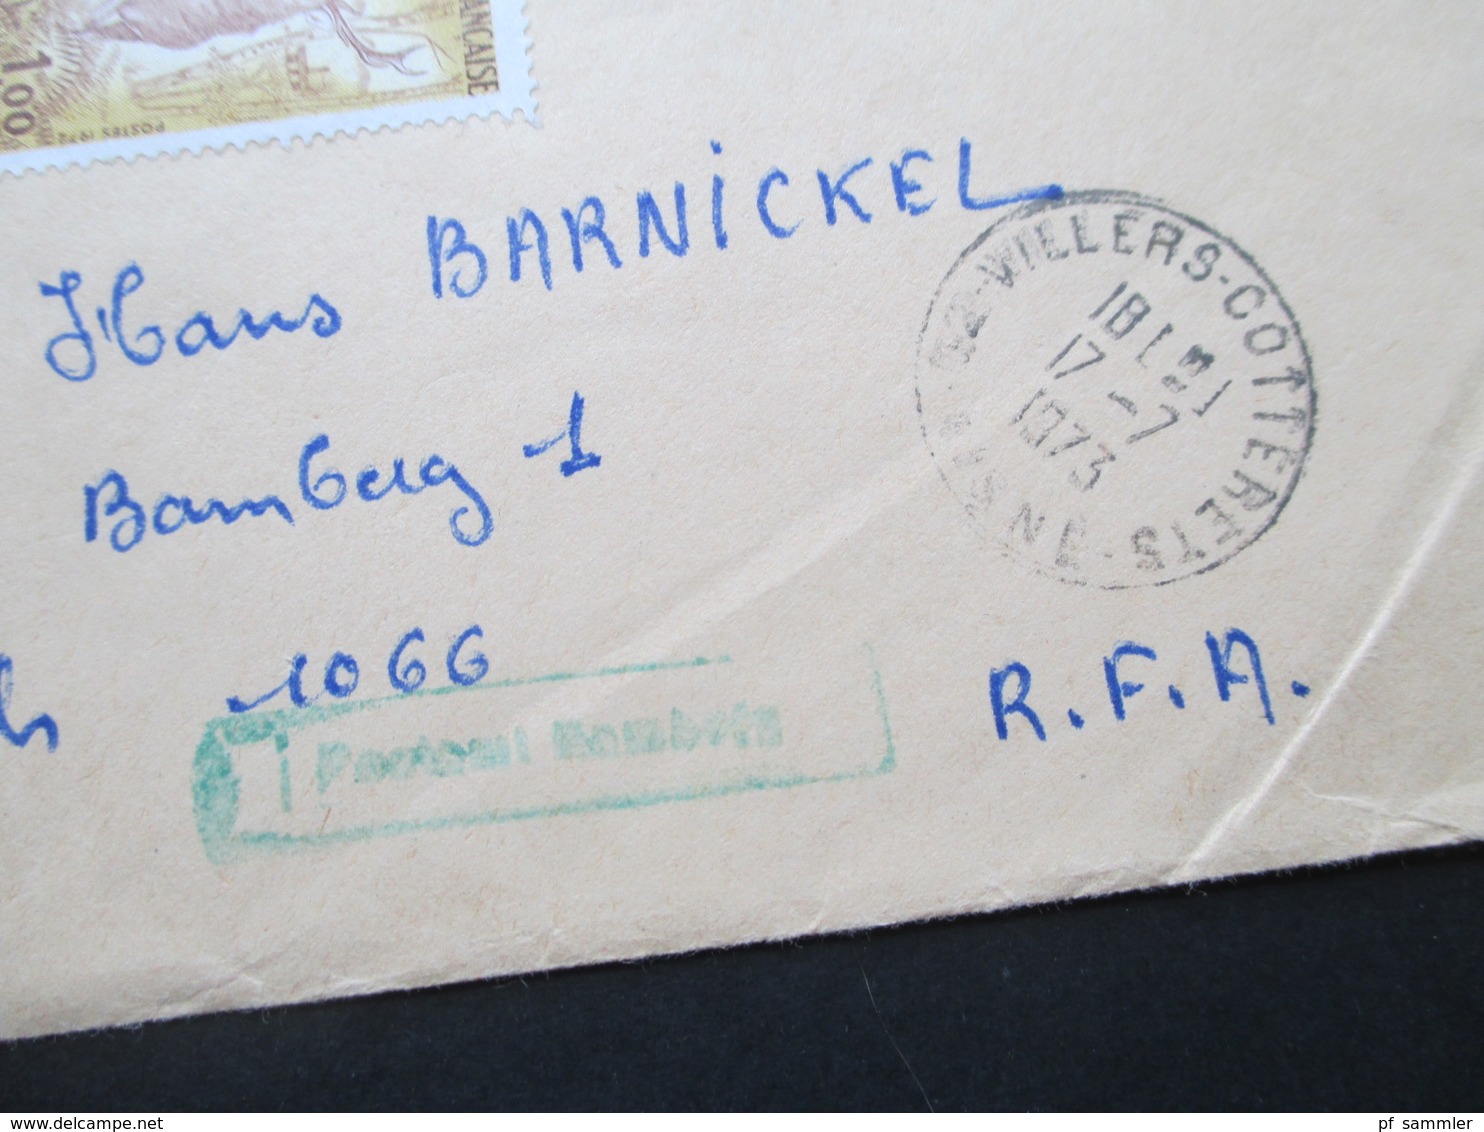 Frankreich 1973 Einschreiben / R-Brief R-Zettel Gestempelt Villers - Cotterets Mit Zollaufkleber Douane Nach Bamberg - Covers & Documents